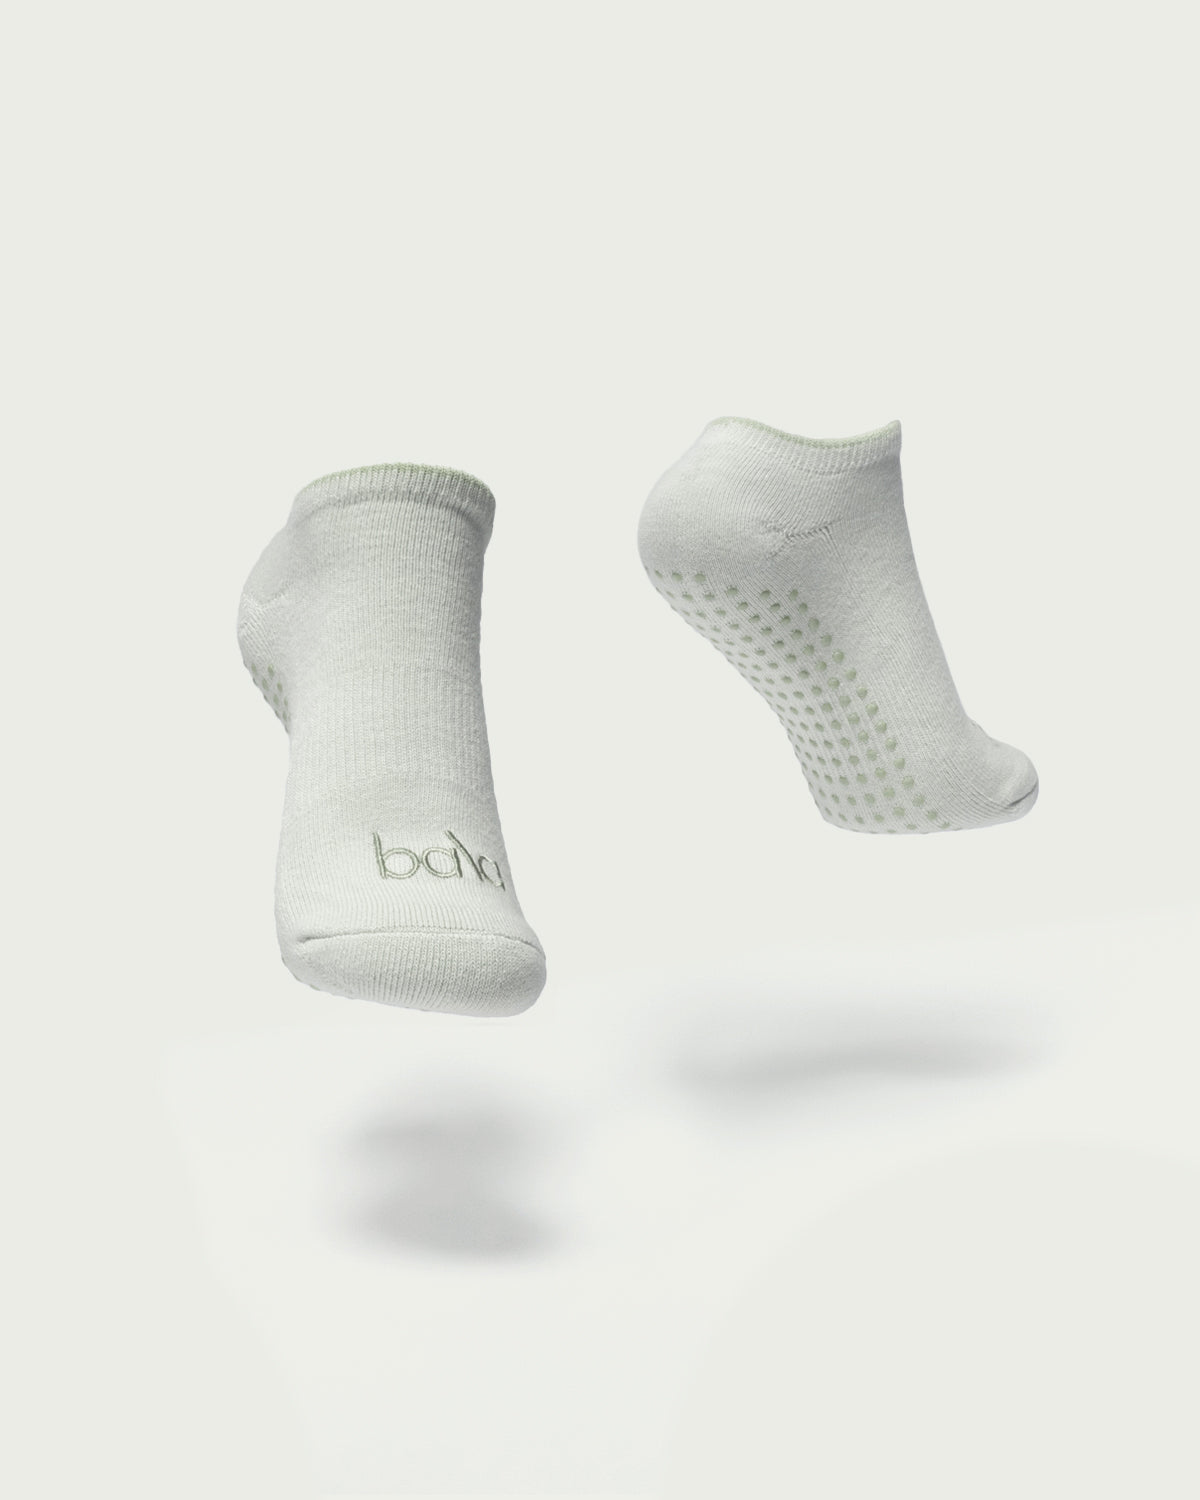 Kit On Demand Grip Socks